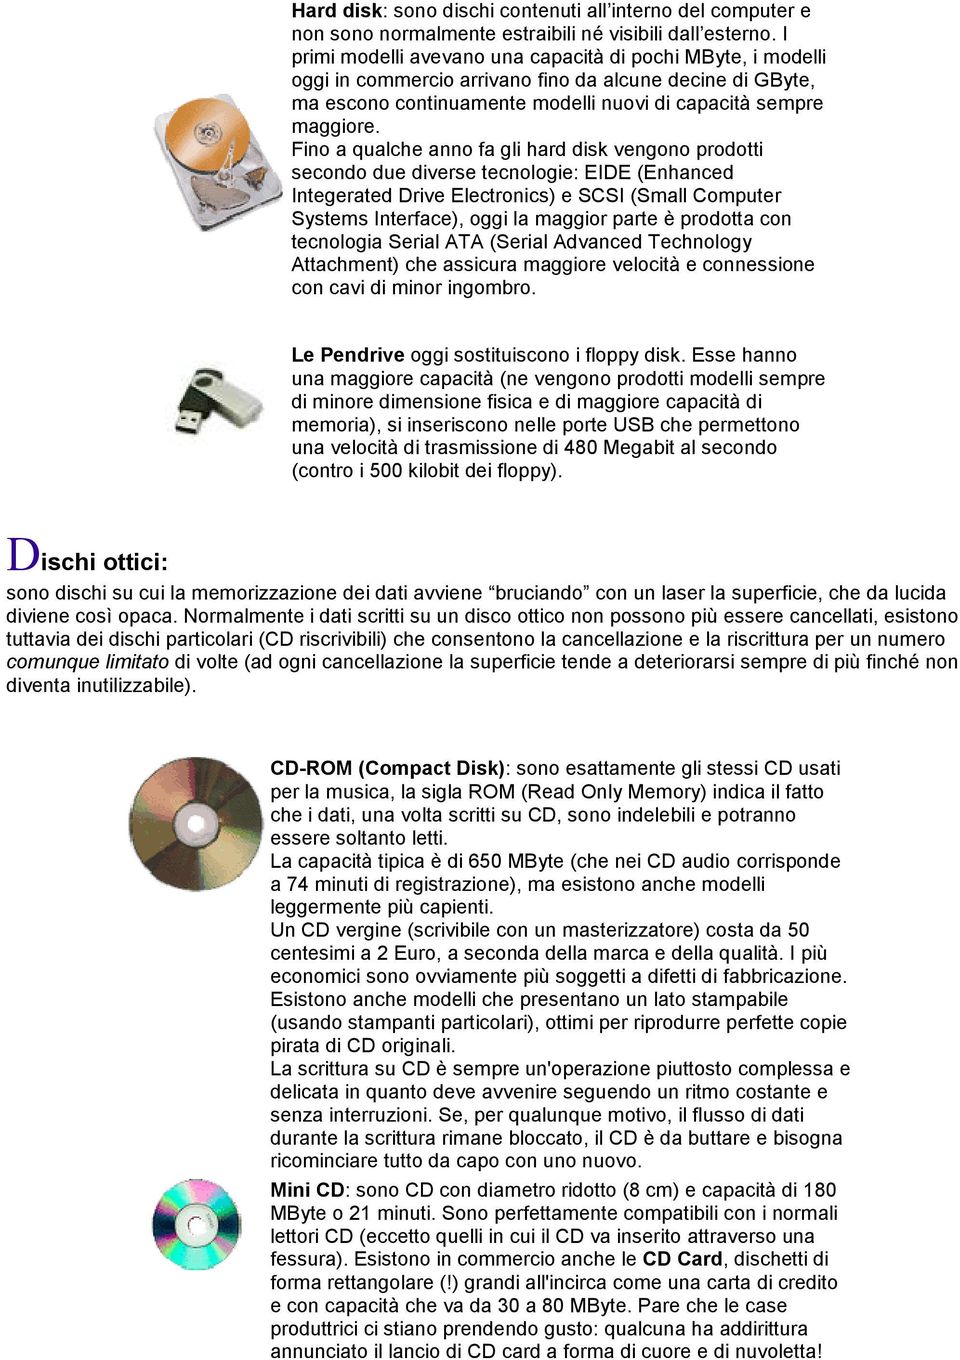 Fino a qualche anno fa gli hard disk vengono prodotti secondo due diverse tecnologie: EIDE (Enhanced Integerated Drive Electronics) e SCSI (Small Computer Systems Interface), oggi la maggior parte è